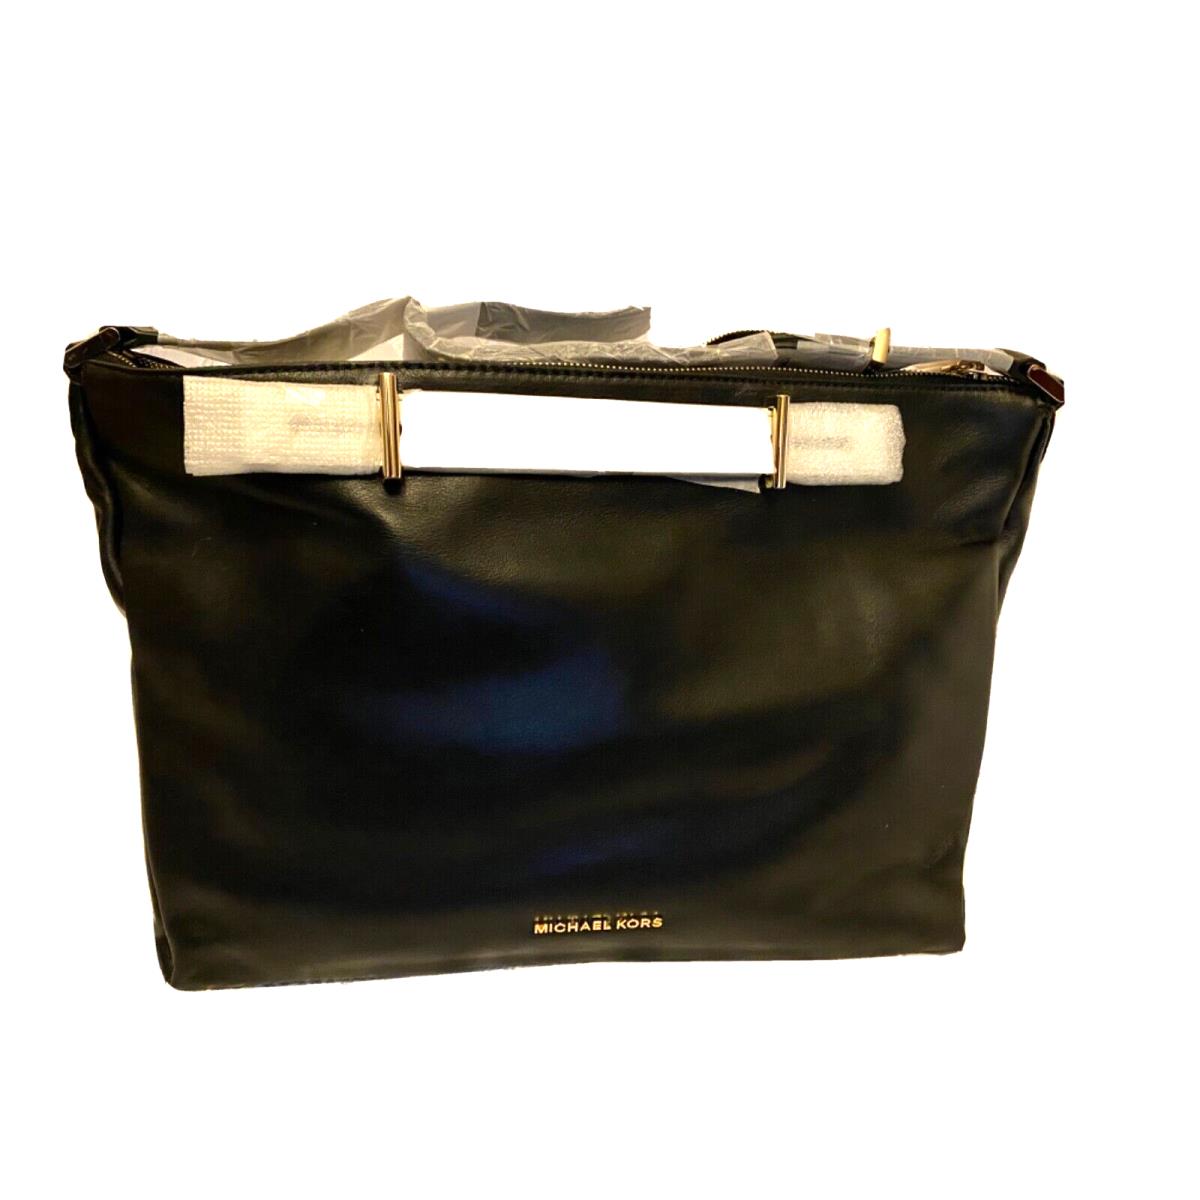 Michael Kors Chelsey LG Shoulder Black /white Leather Handbag